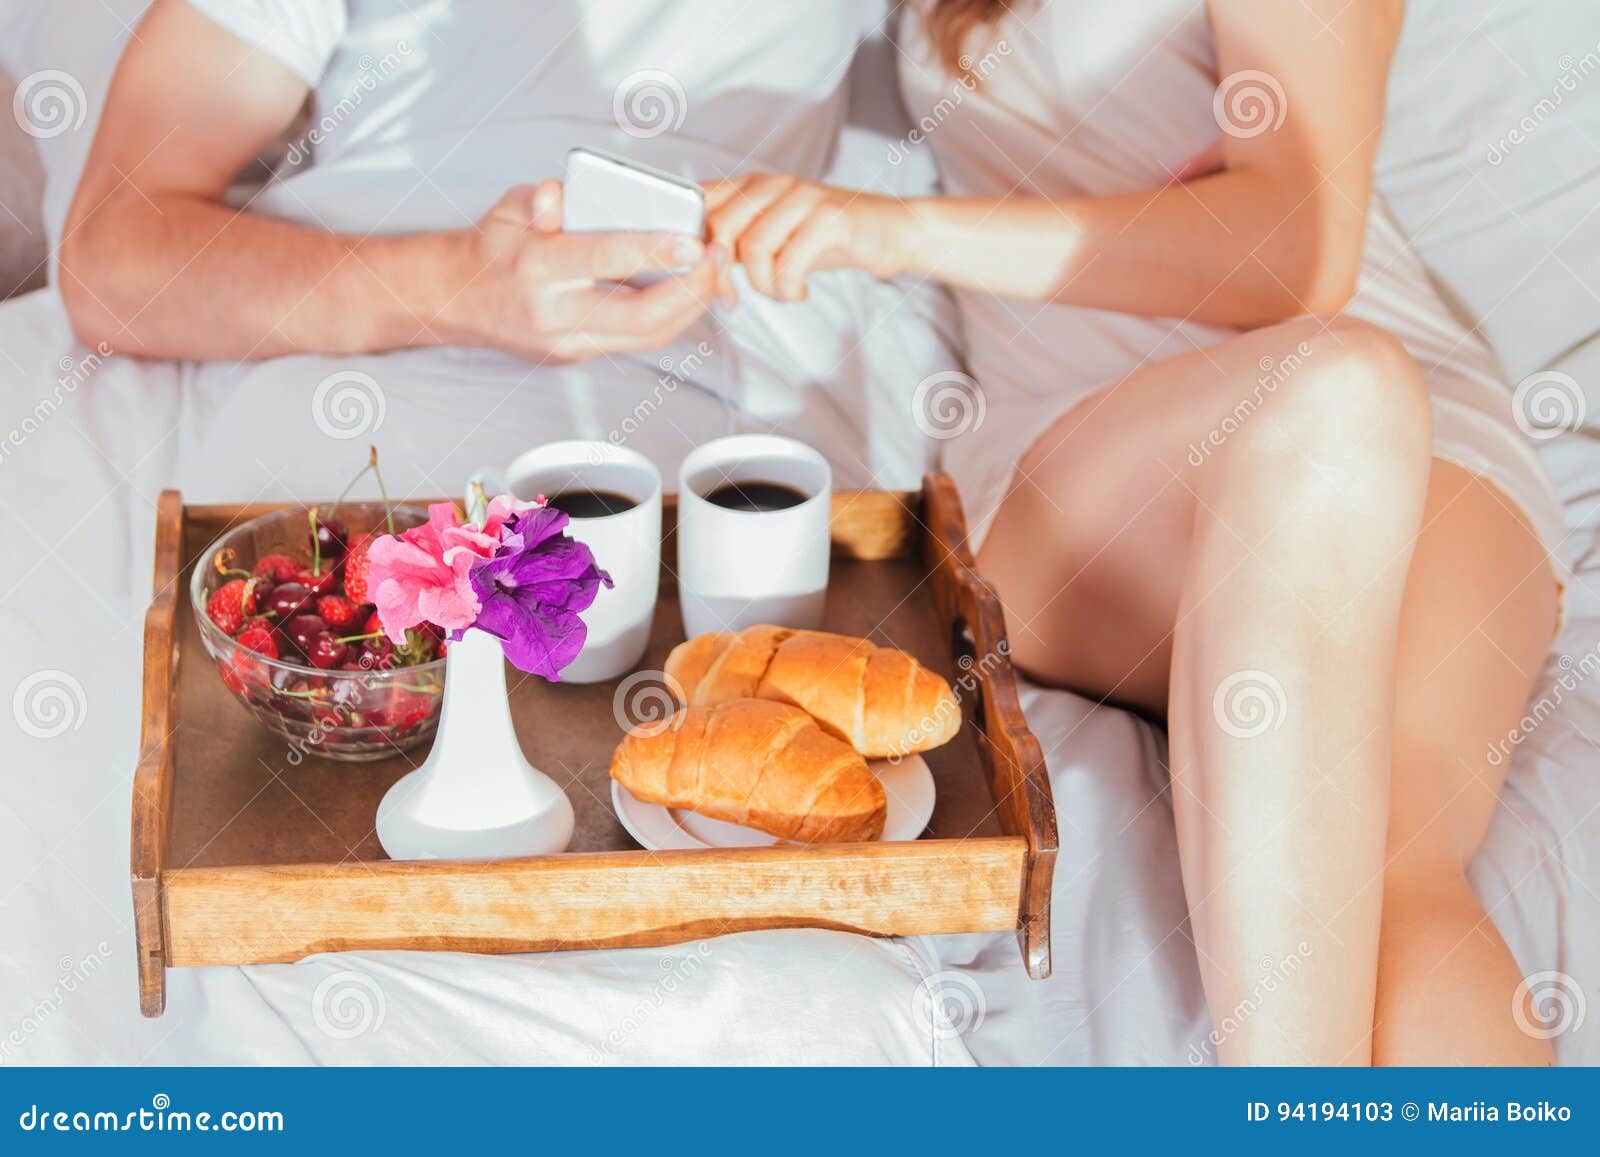 порно принес ей завтрак фото 104